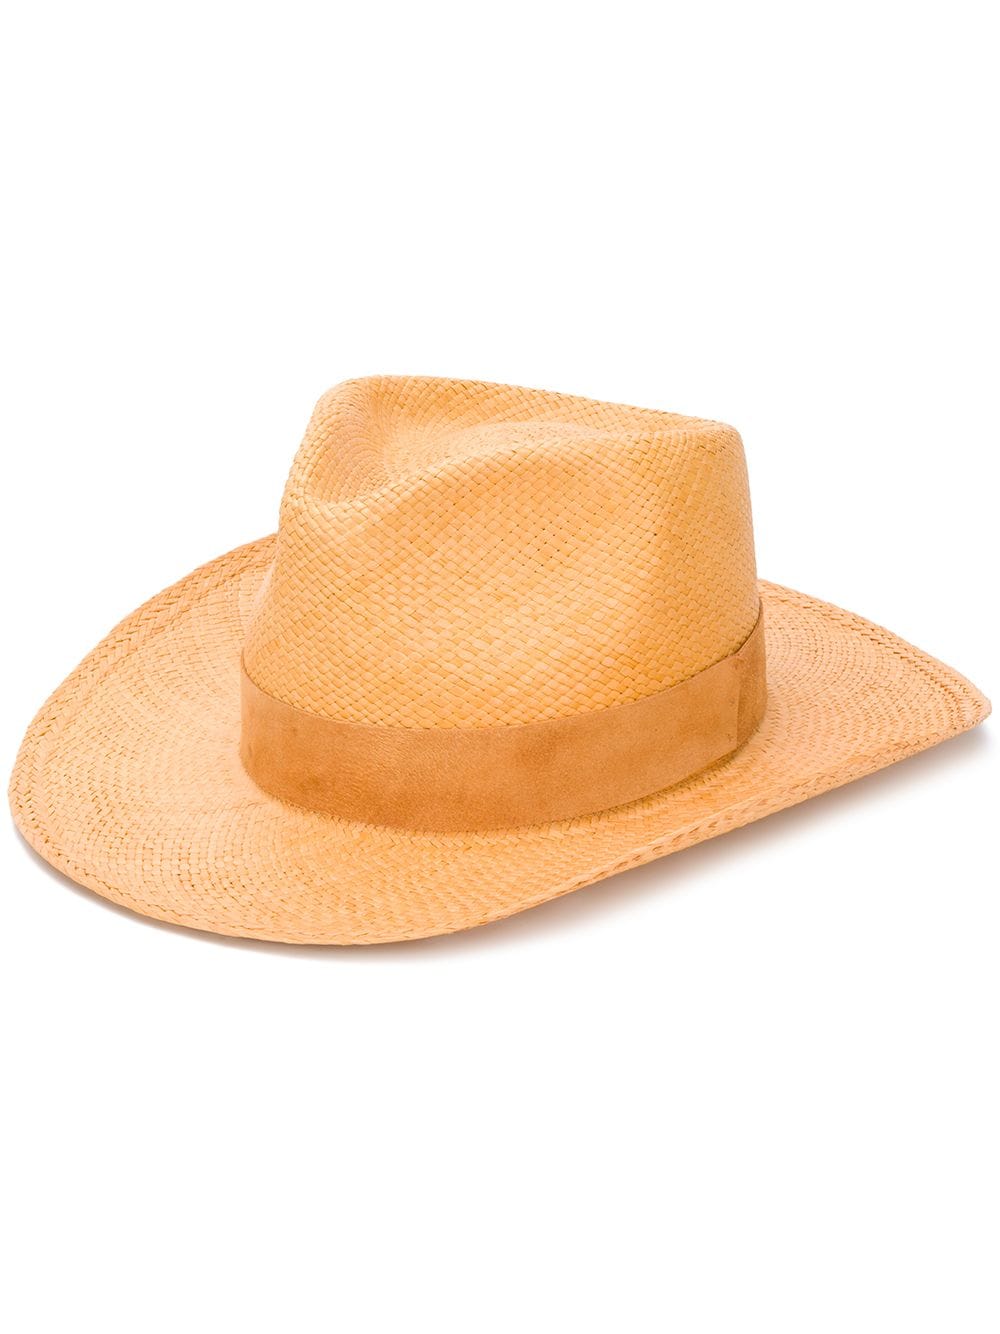 фото Super duper hats плетеная шляпа-федора